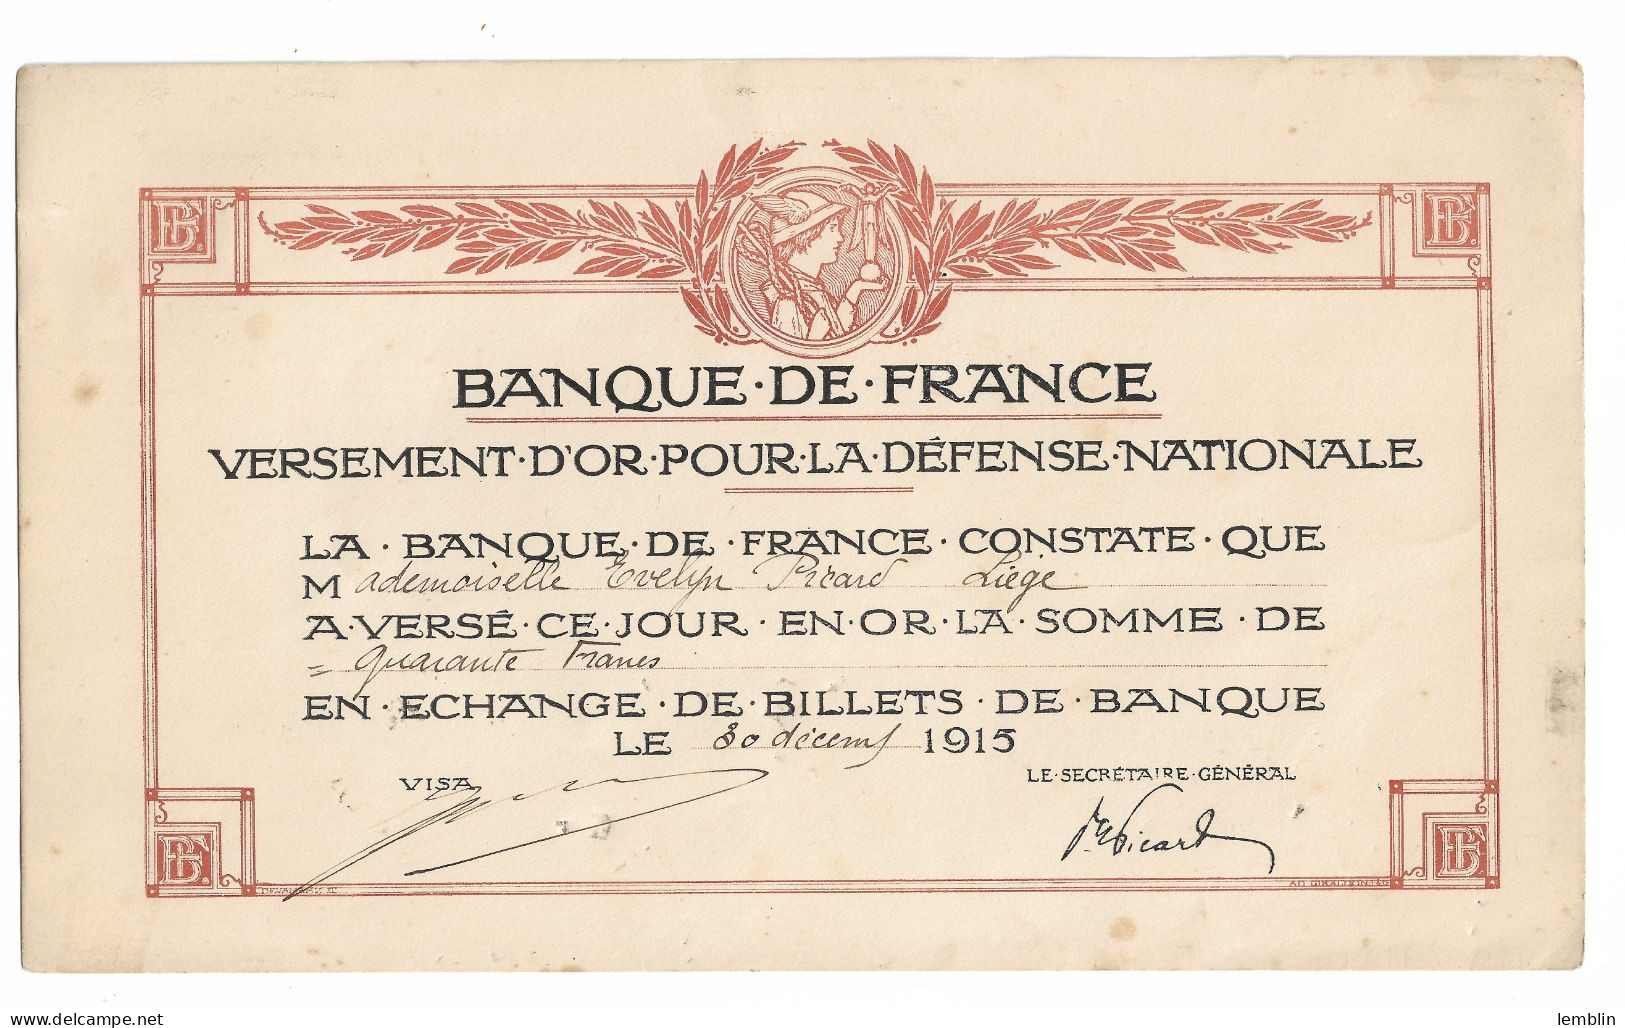 FRANCE - VERSEMENT OR POUR LA DEFENSE NATIONALE DE LA BANQUE DE FRANCE 1915 - Bank & Insurance